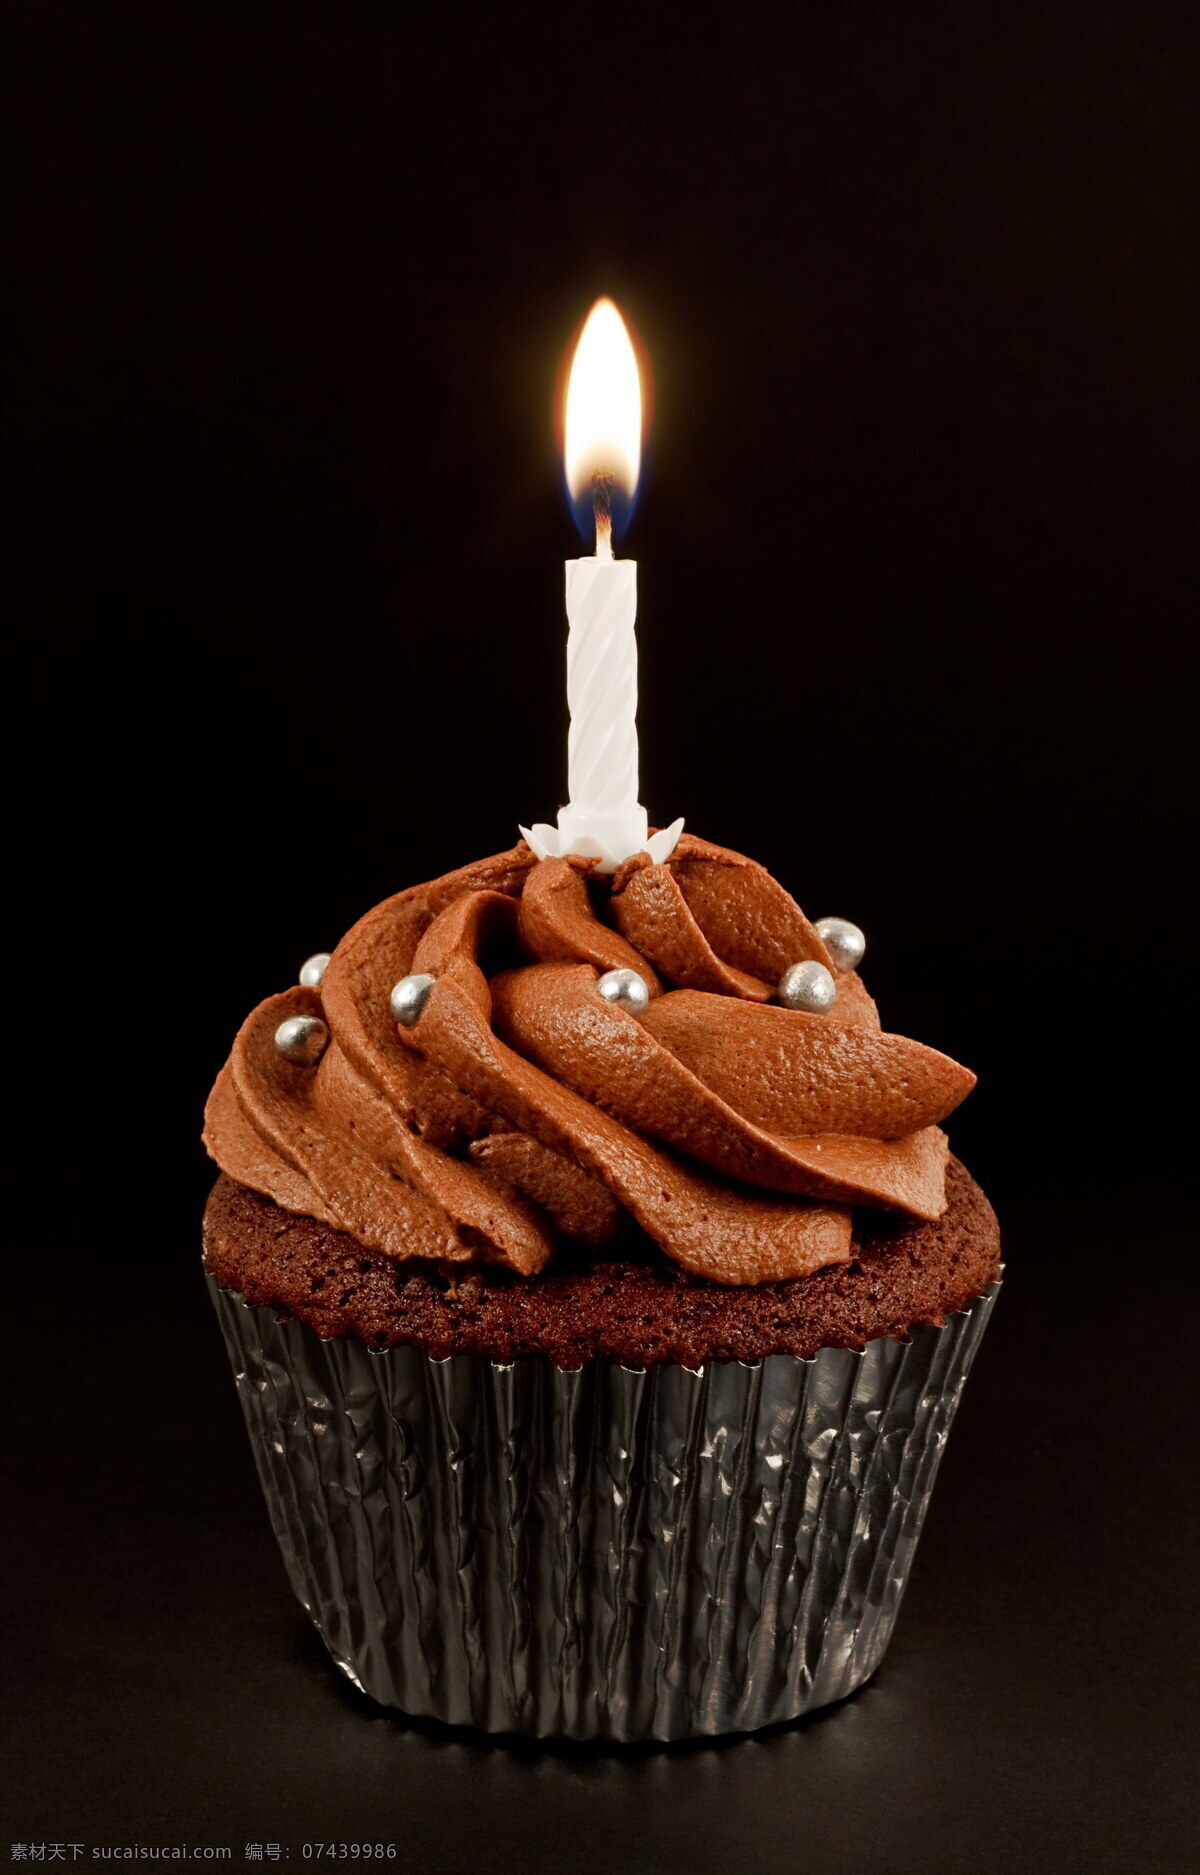 咖啡蛋糕 咖啡 蛋糕 糕点 奶油蛋糕 生日蛋糕 花朵 彩色蛋糕 盘子 蜡烛 其他类别 餐饮美食 黑色